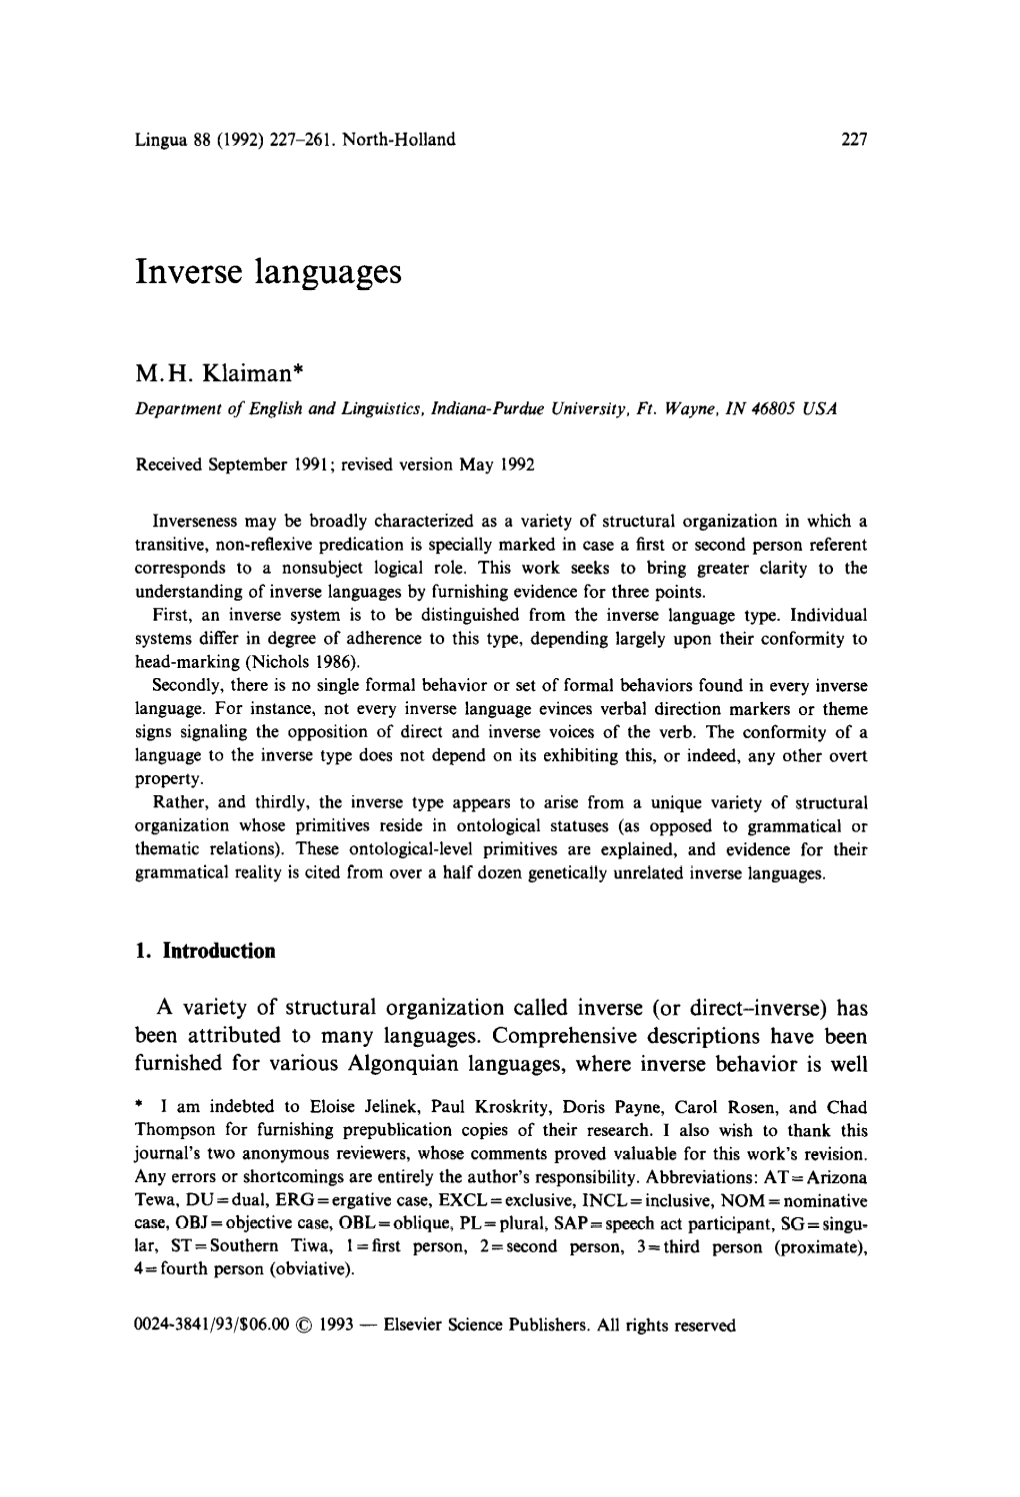 Inverse Languages